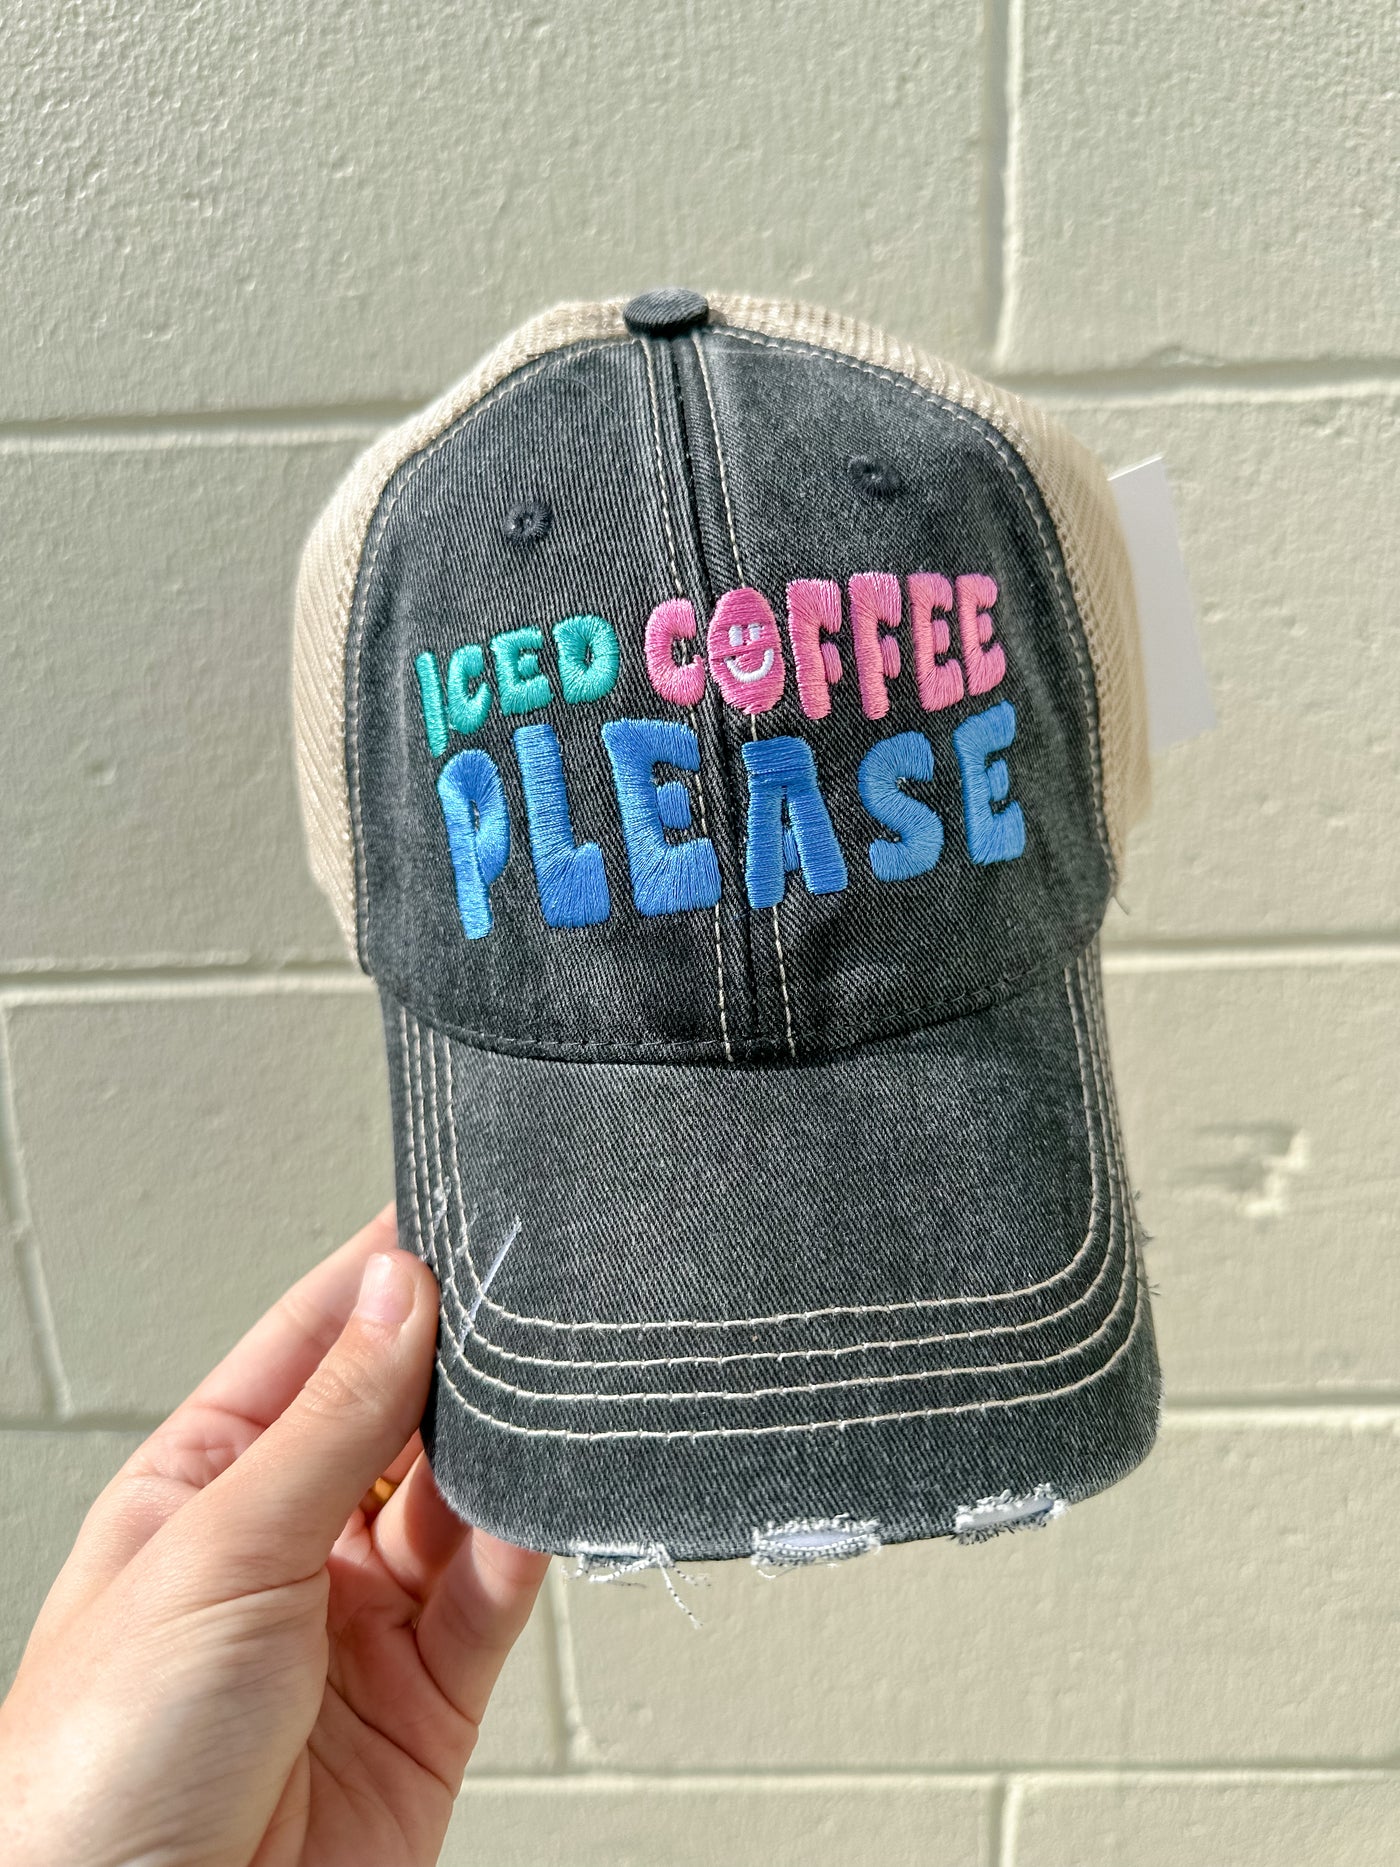 Iced Coffee Please Trucker Hats